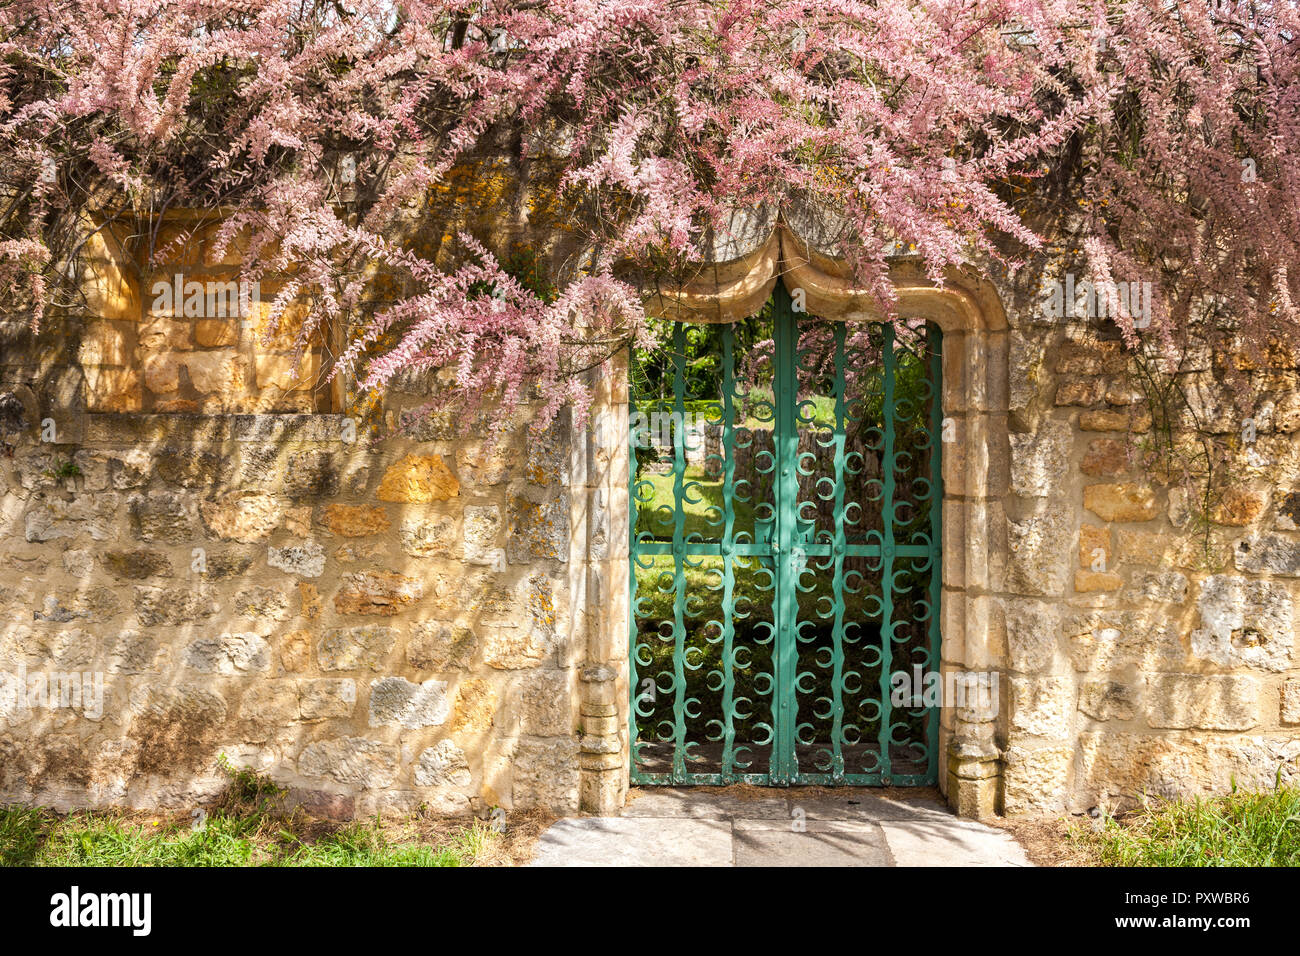 Tamarix Werk in voller Blüte, die sich um einen grünen Metal Gate und verzierten Stein Bogen Tür und ols Steinmauer Stockfoto